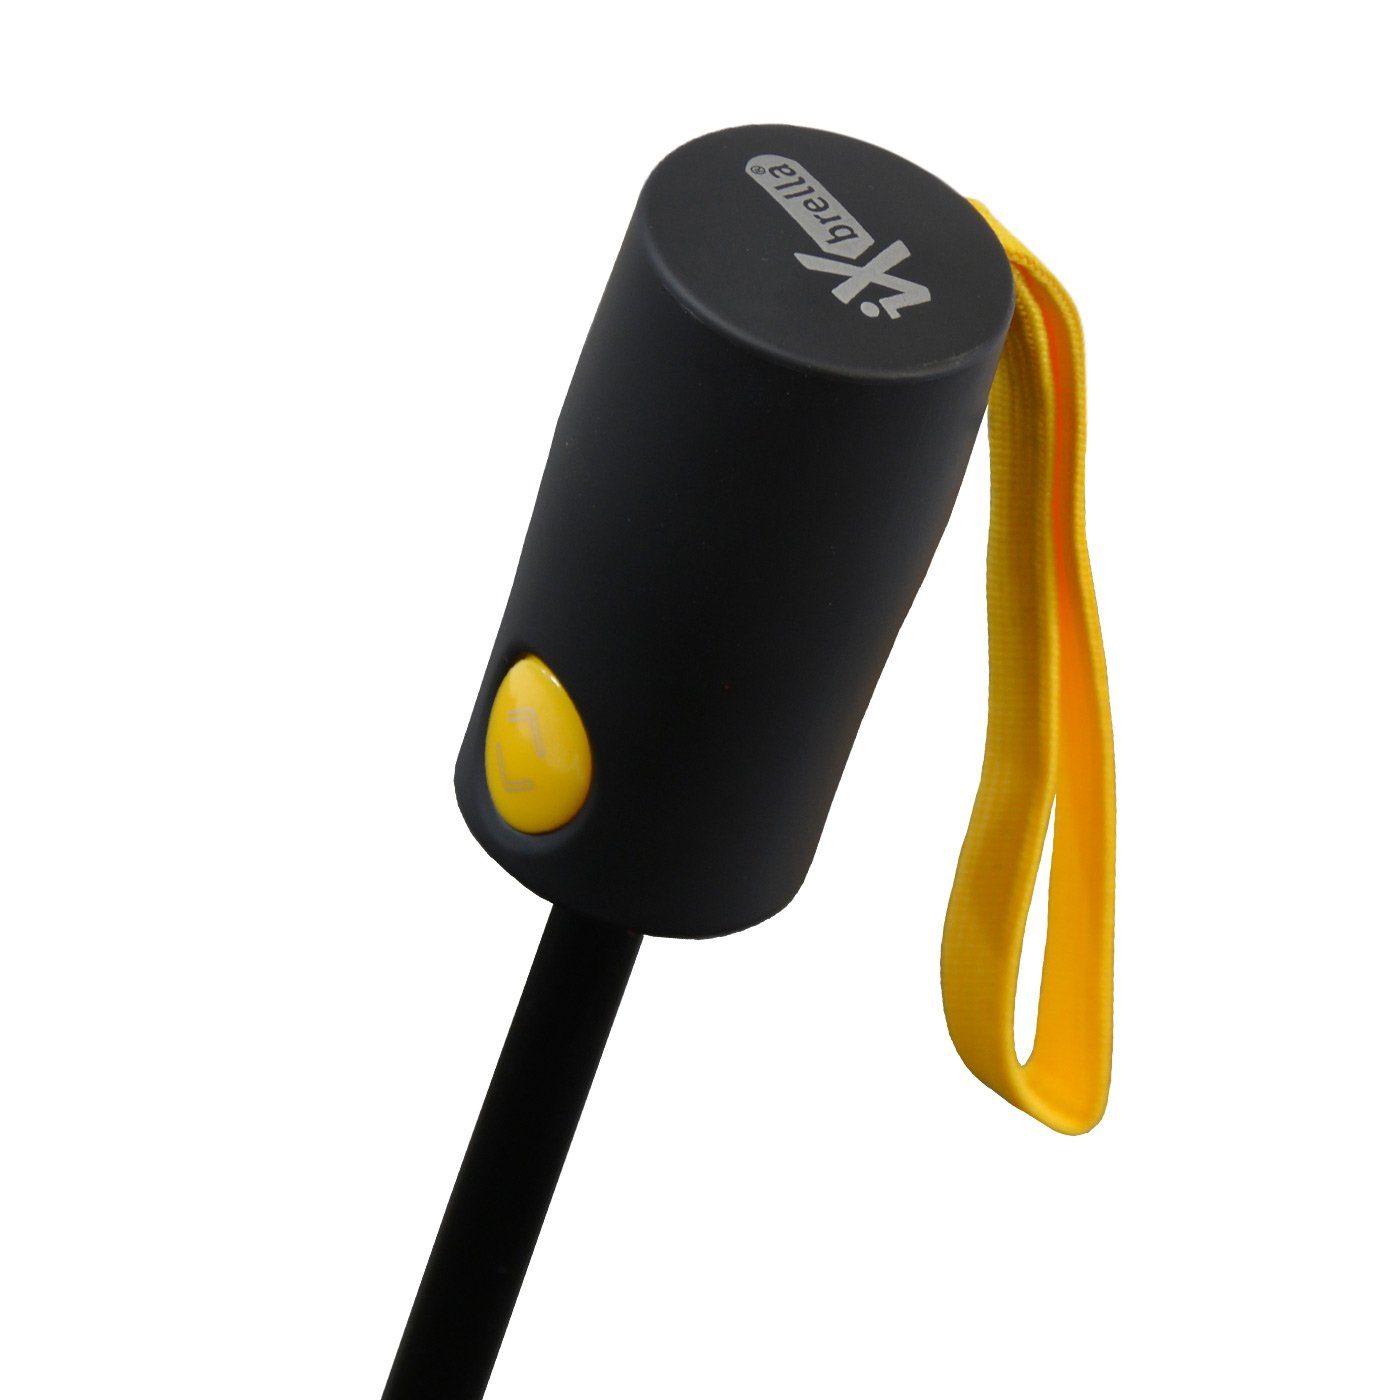 öffnender mit bunten Reverse umgekehrt Taschenregenschirm Speichen iX-brella stabilen Fiberglas-Automatiksch, gelb